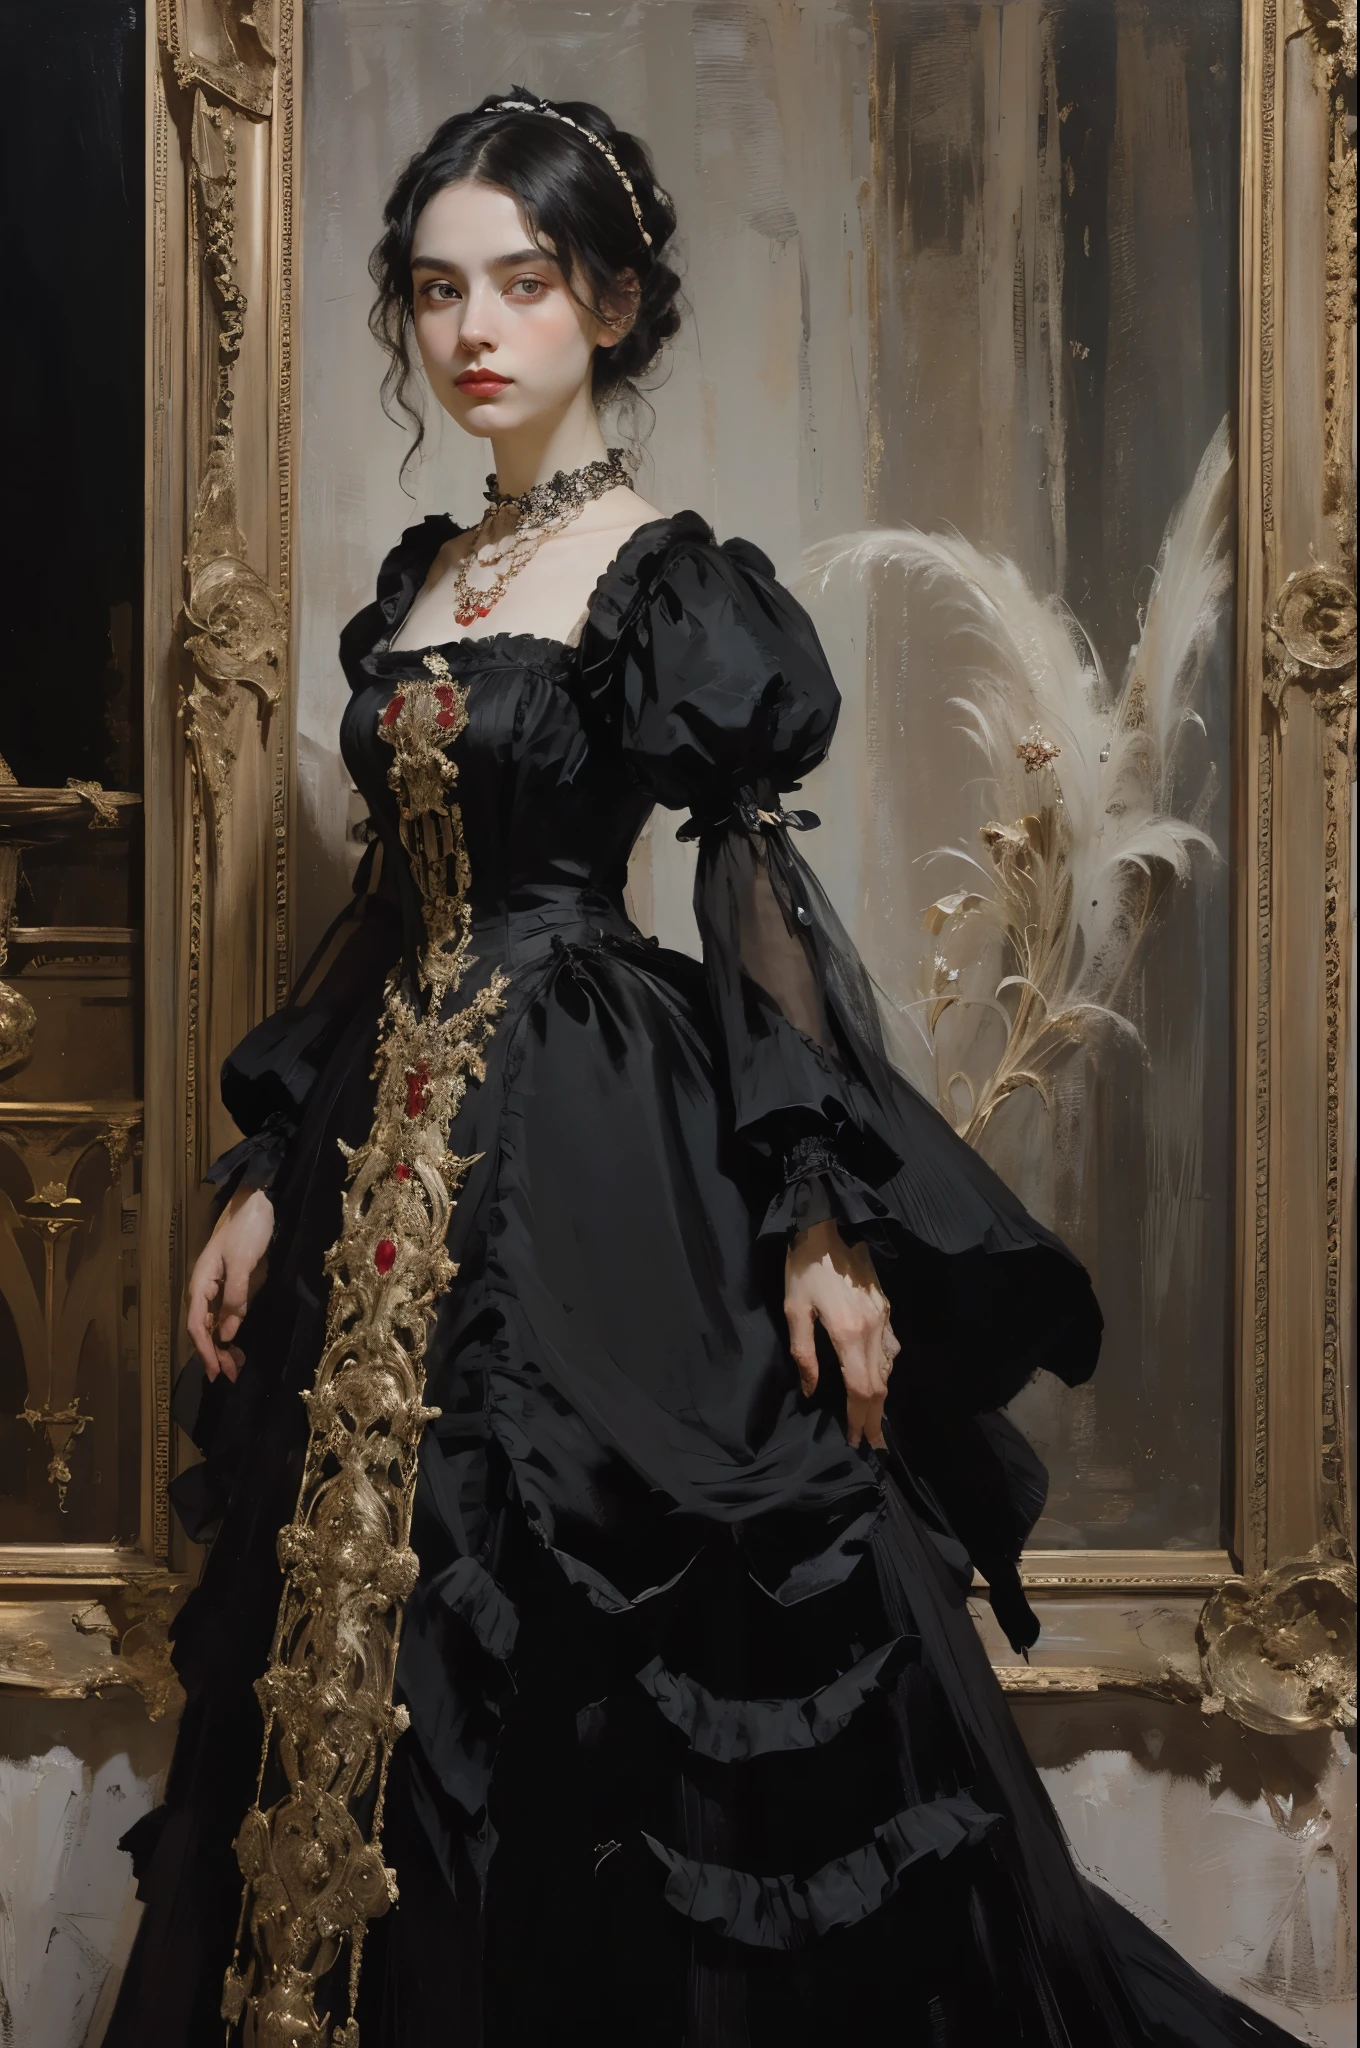 классическая живопись, ((Портрет: 1.3)), девушка в черном платье, официальное платье викторианского стиля, (Викторианское вечернее платье: 1.3), у платья есть воротник-стойка, молодая девушка 25 лет, бледная кожа, стройный, монохромное изображение с акцентным цветом, красное рубиновое ожерелье,